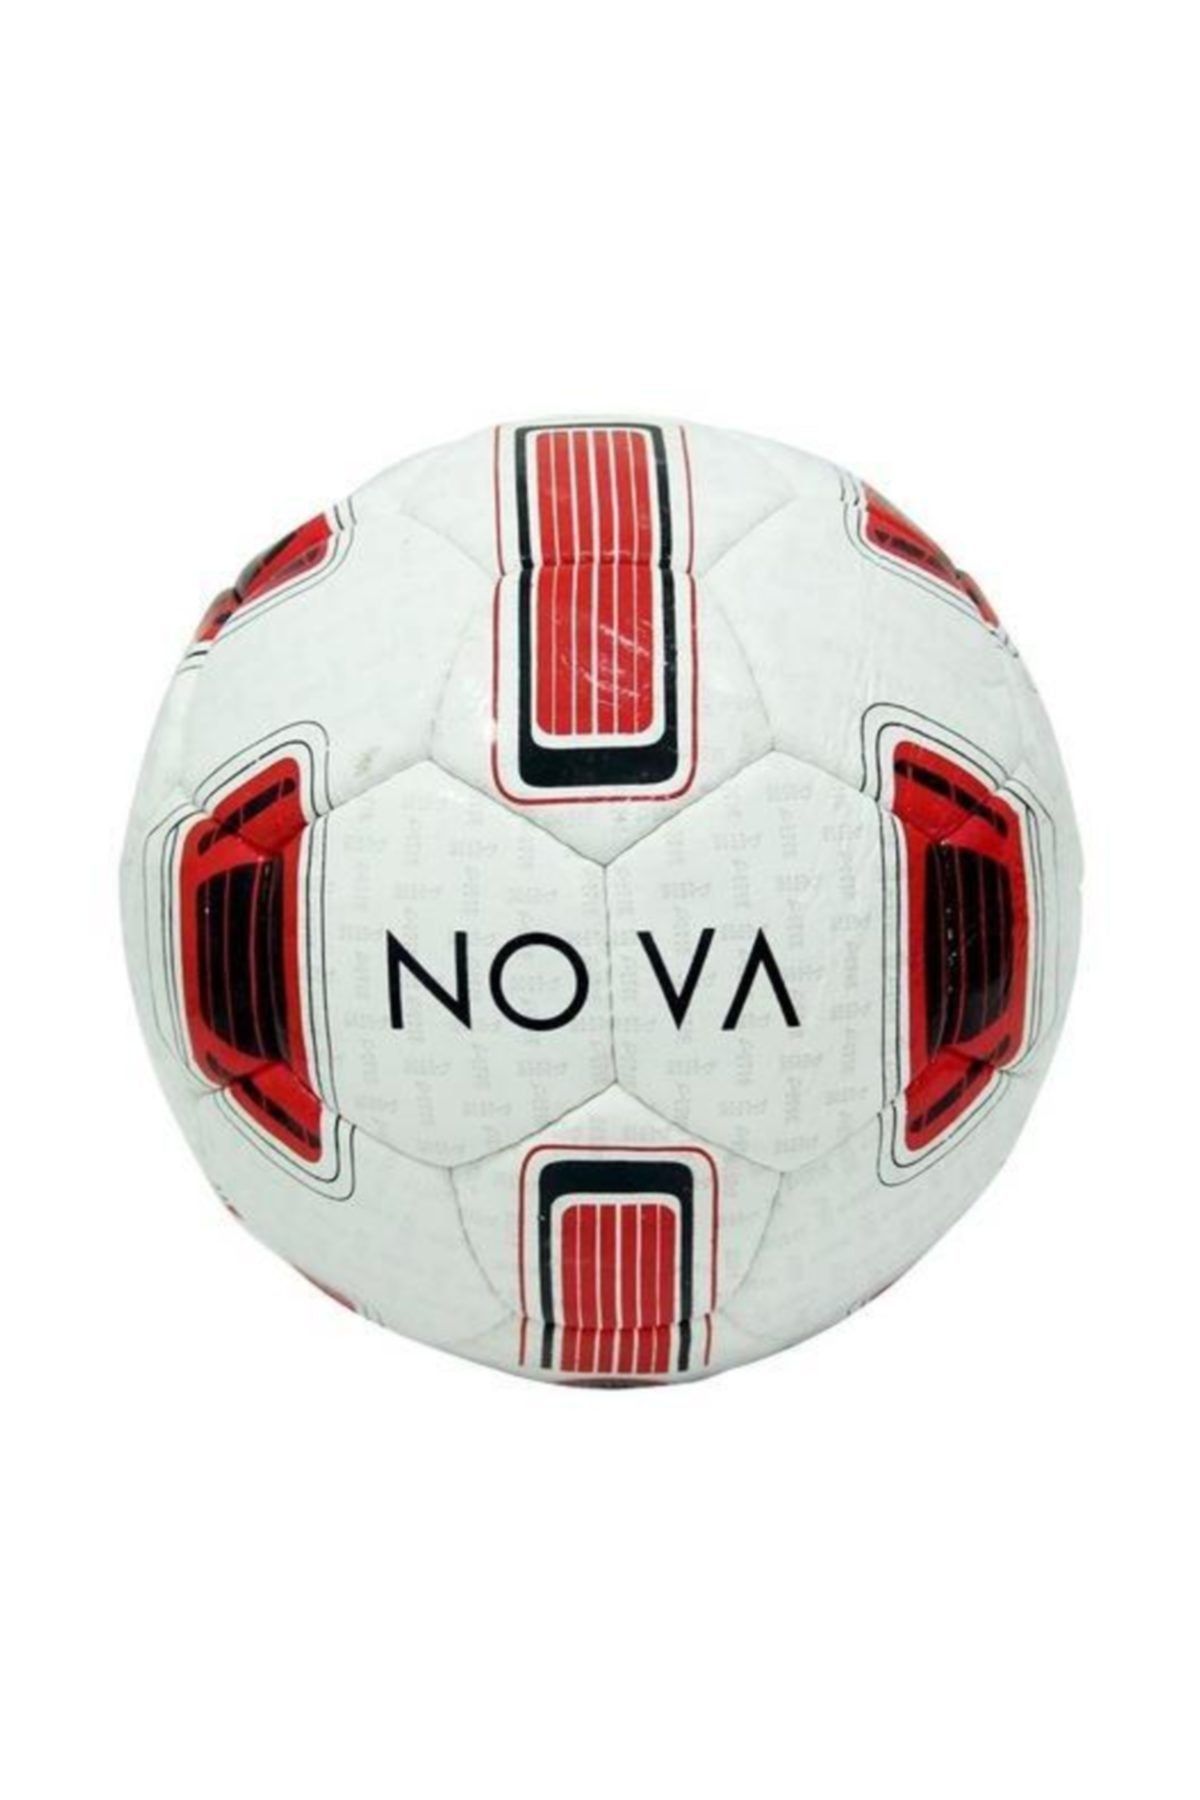 ALTIS Nova Futbol Topu No:4   Altis